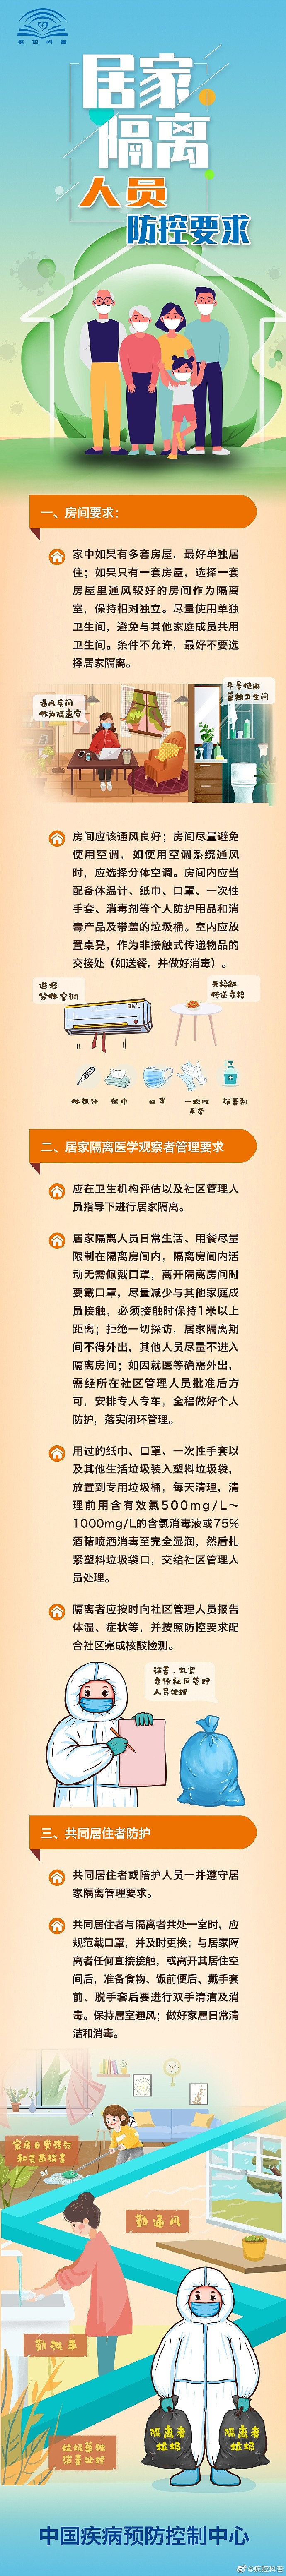 中国疾病预防控制中心官方发布《居家隔离人员防控要求》 - 1